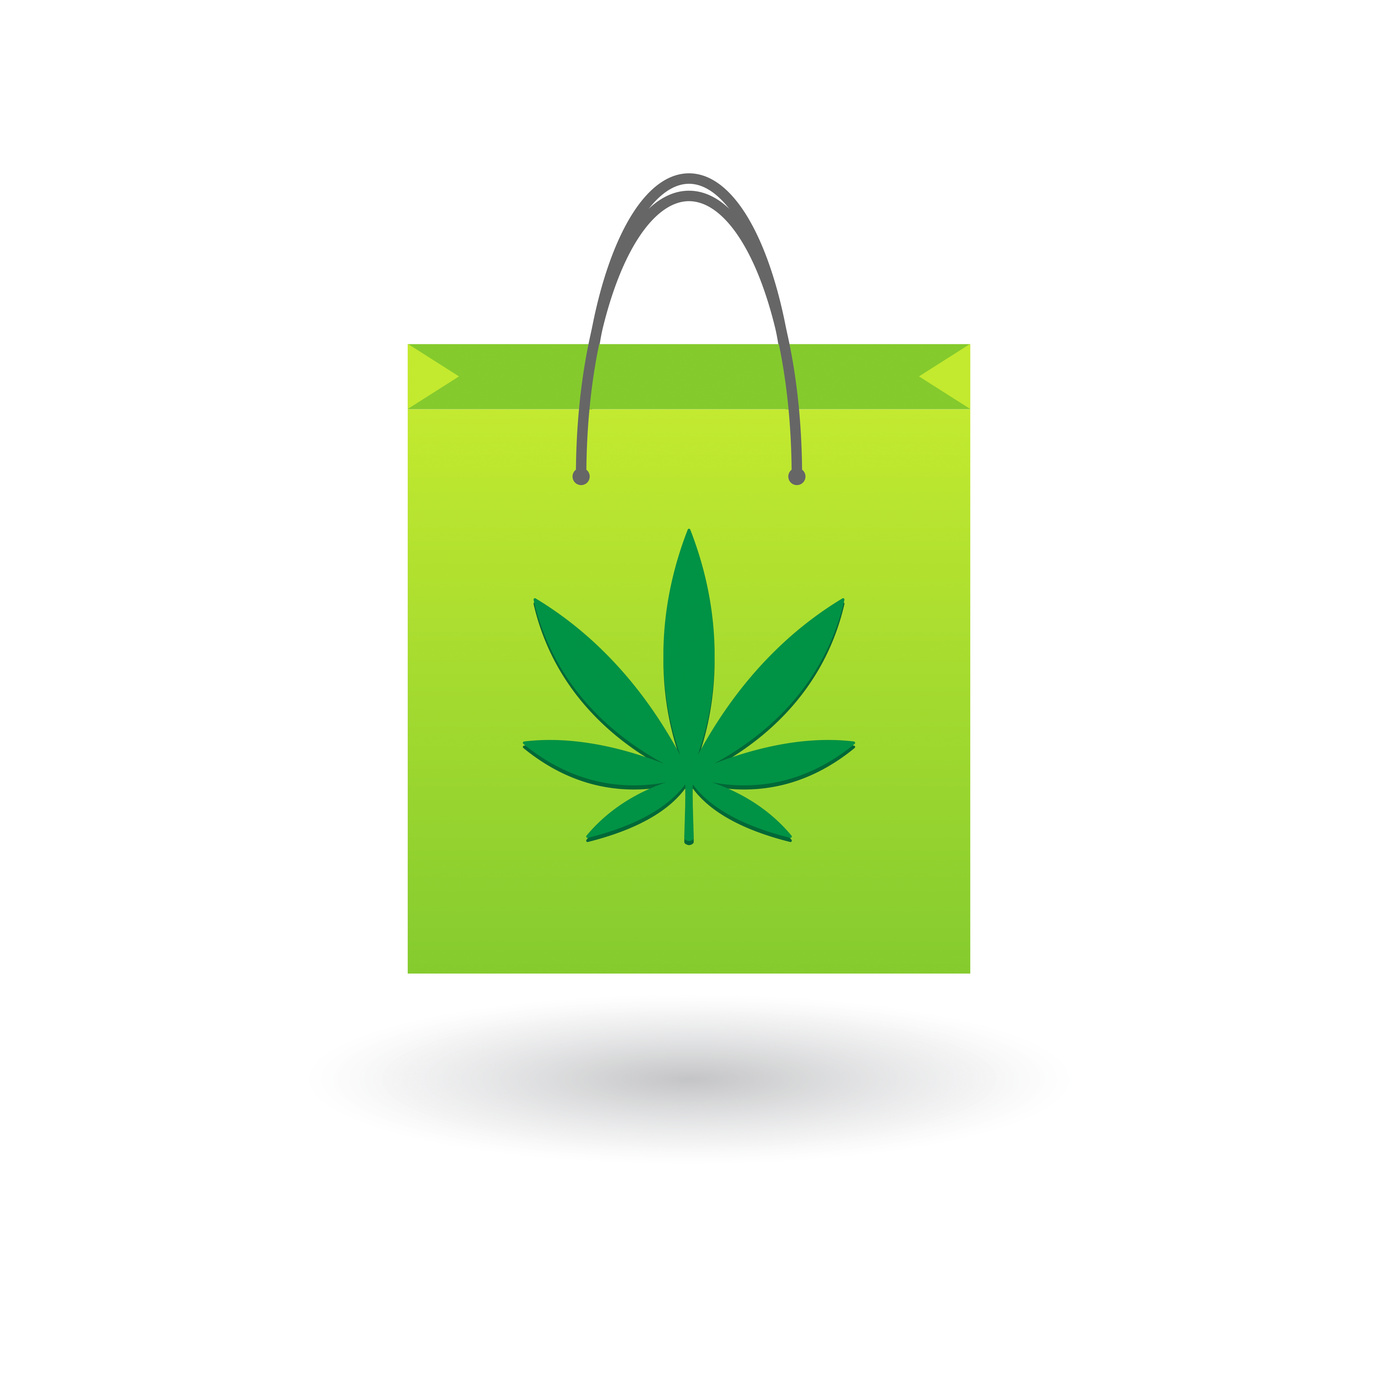 How To Safely Buy Marijuana Online